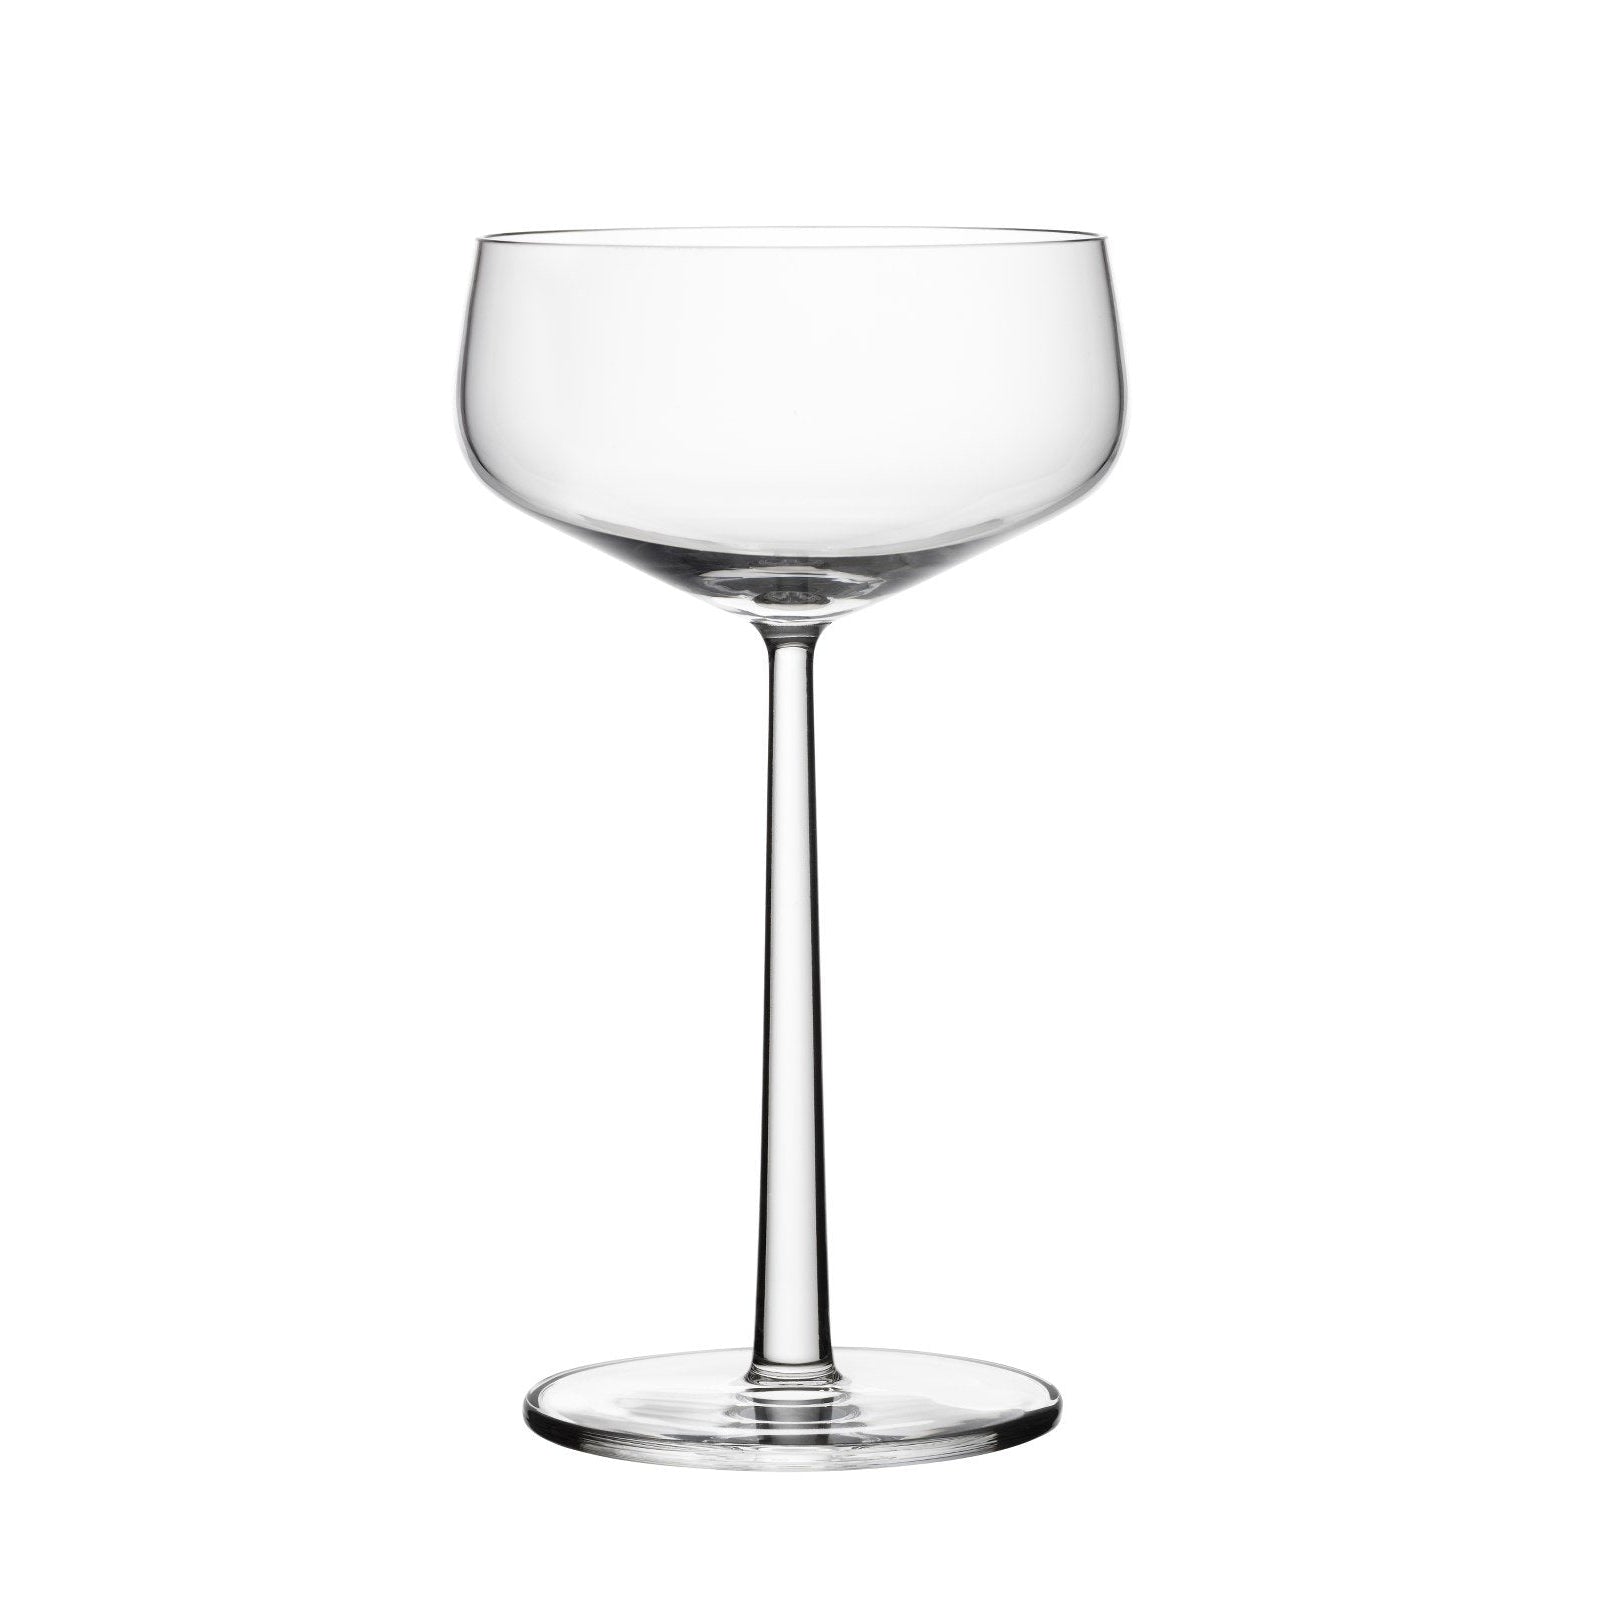 Iittala Essence Cocktailglas 2pcs, 31cl